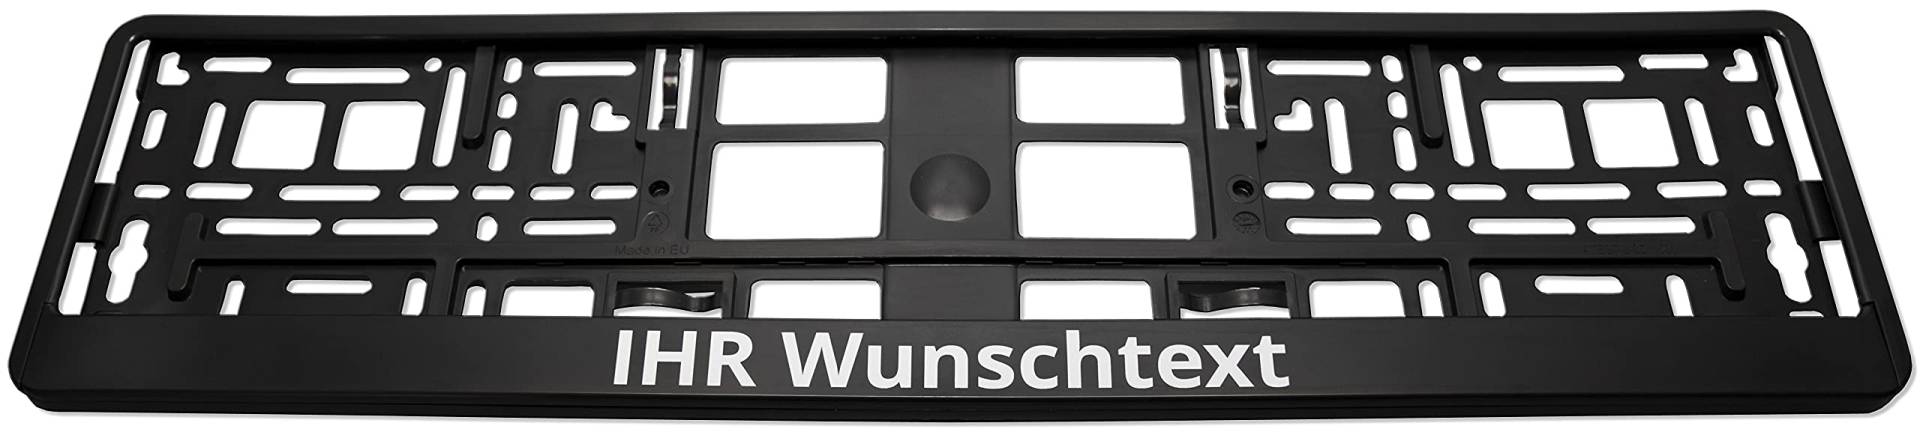 KENNZEICHENHALTER semi matt schwarz mit individuellem WUNSCHTEXT direkt Bedruckt - Keine Folie - 1 Kennzeichenhalter mit Wunschtext von Texmacher